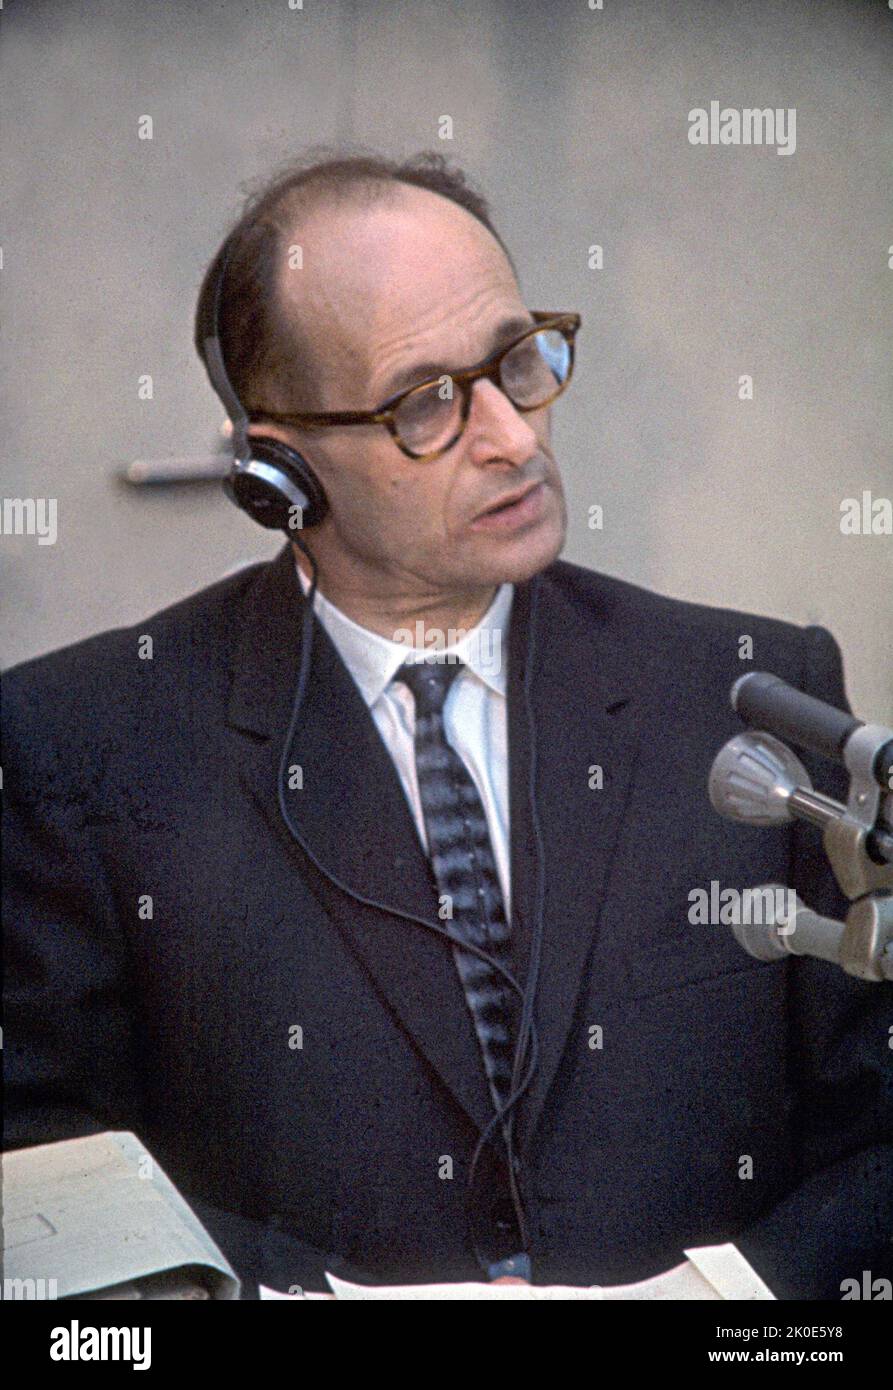 Procès d'Adolf Eichmann en Israël 1962. Eichmann (1906 - 1 juin 1962) était un SS-Obersturmbannfuhrer germano-autrichien et l'un des principaux organisateurs de l'Holocauste (la "solution finale à la question juive" dans la terminologie nazie). Eichmann a été reconnu coupable de crimes de guerre dans un procès largement médiatisé à Jérusalem, où il a été exécuté par pendaison en 1962. Banque D'Images